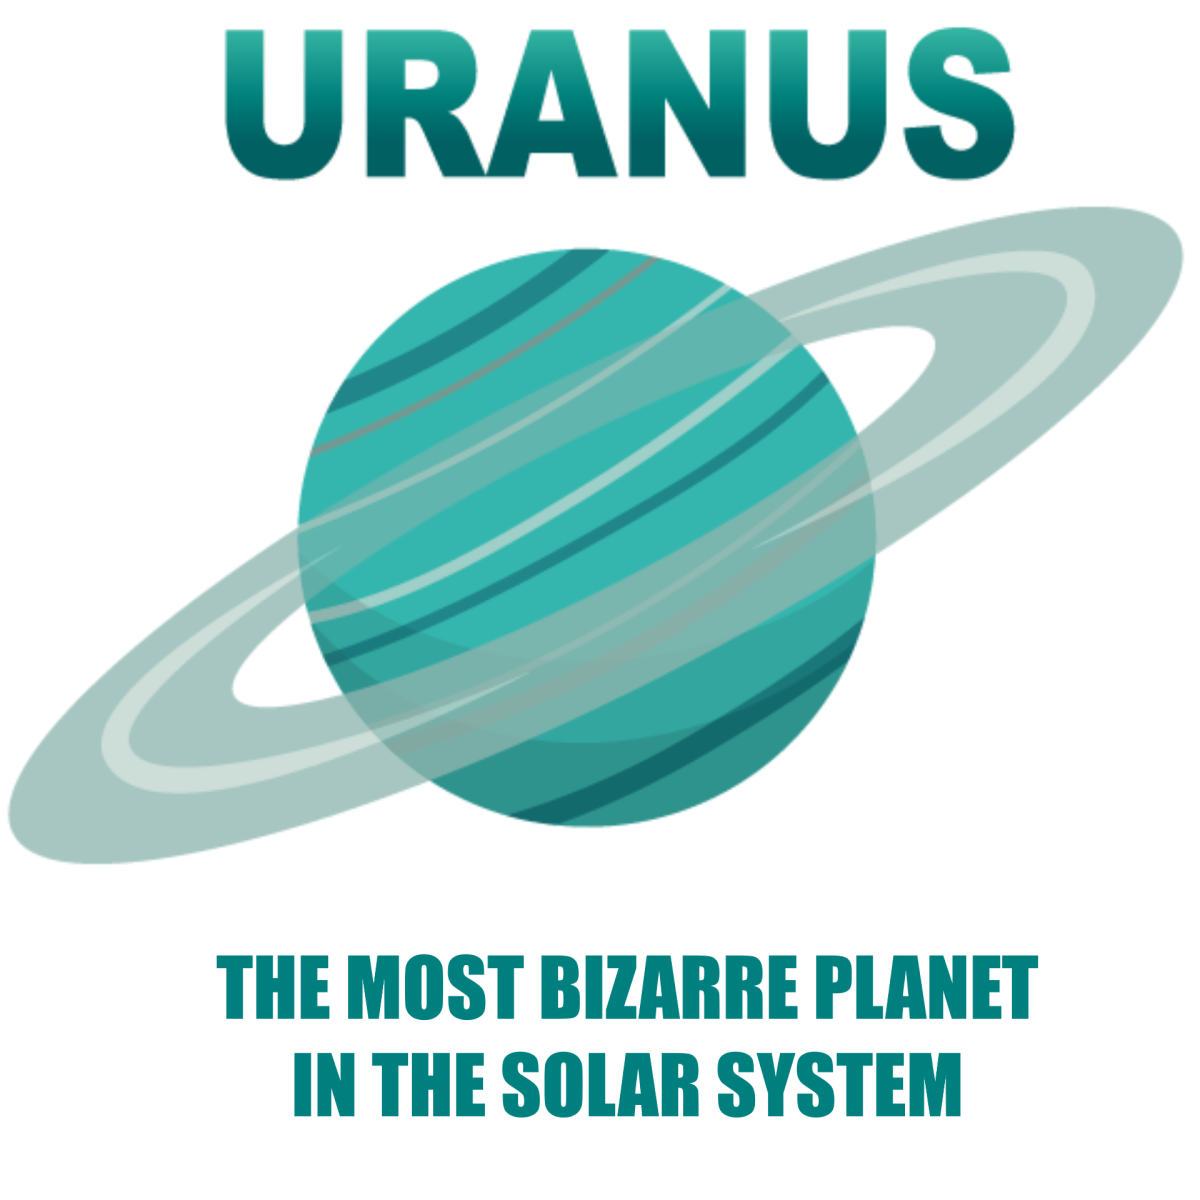 Planet uranus iview